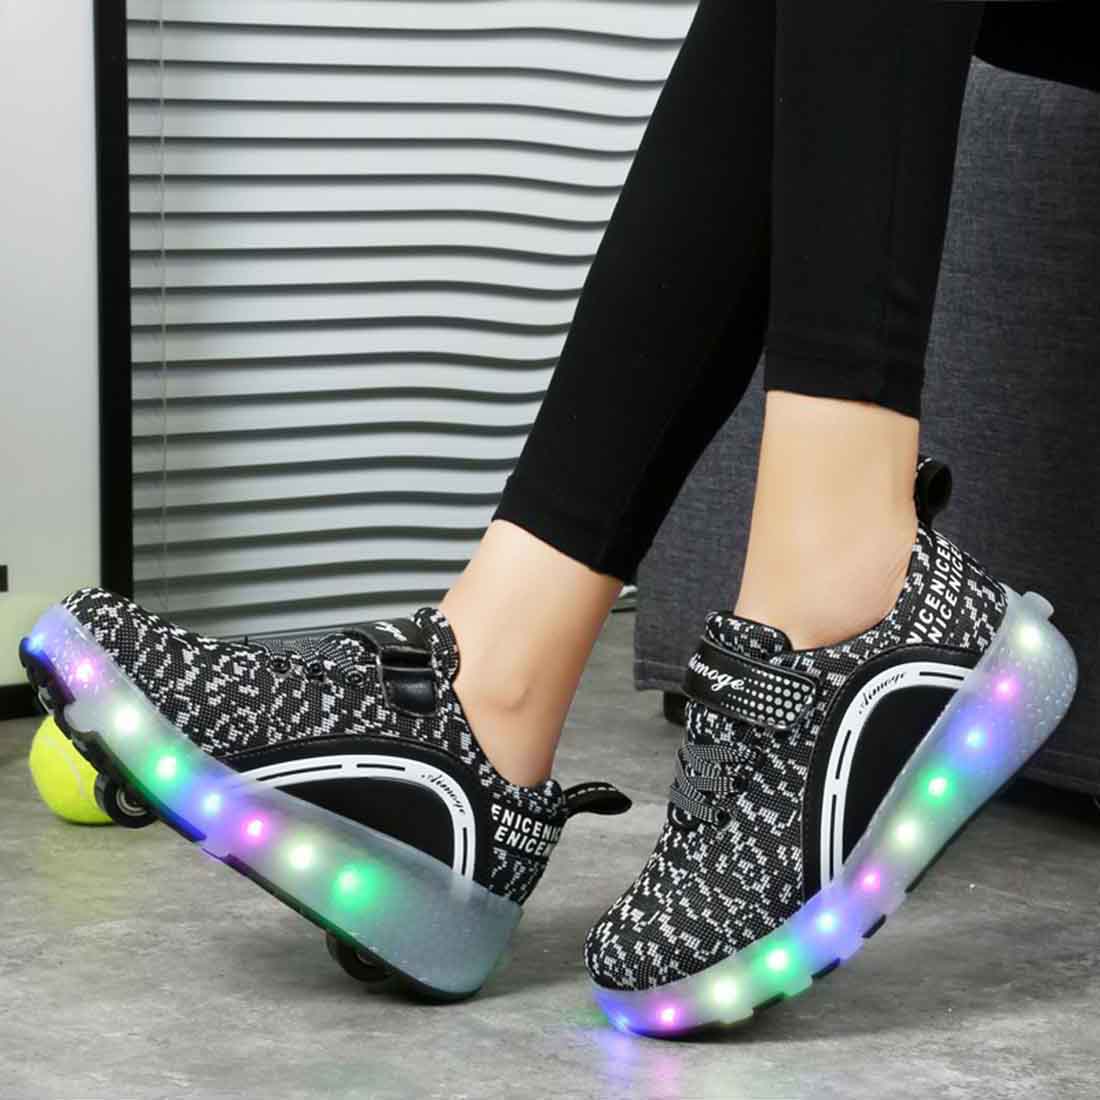 Mädchen Jungen LED Leuchten Räder Skates Roller Schuhe Komfortable Mesh-Oberfläche Rollschuhe für Kinder - SIKAINI